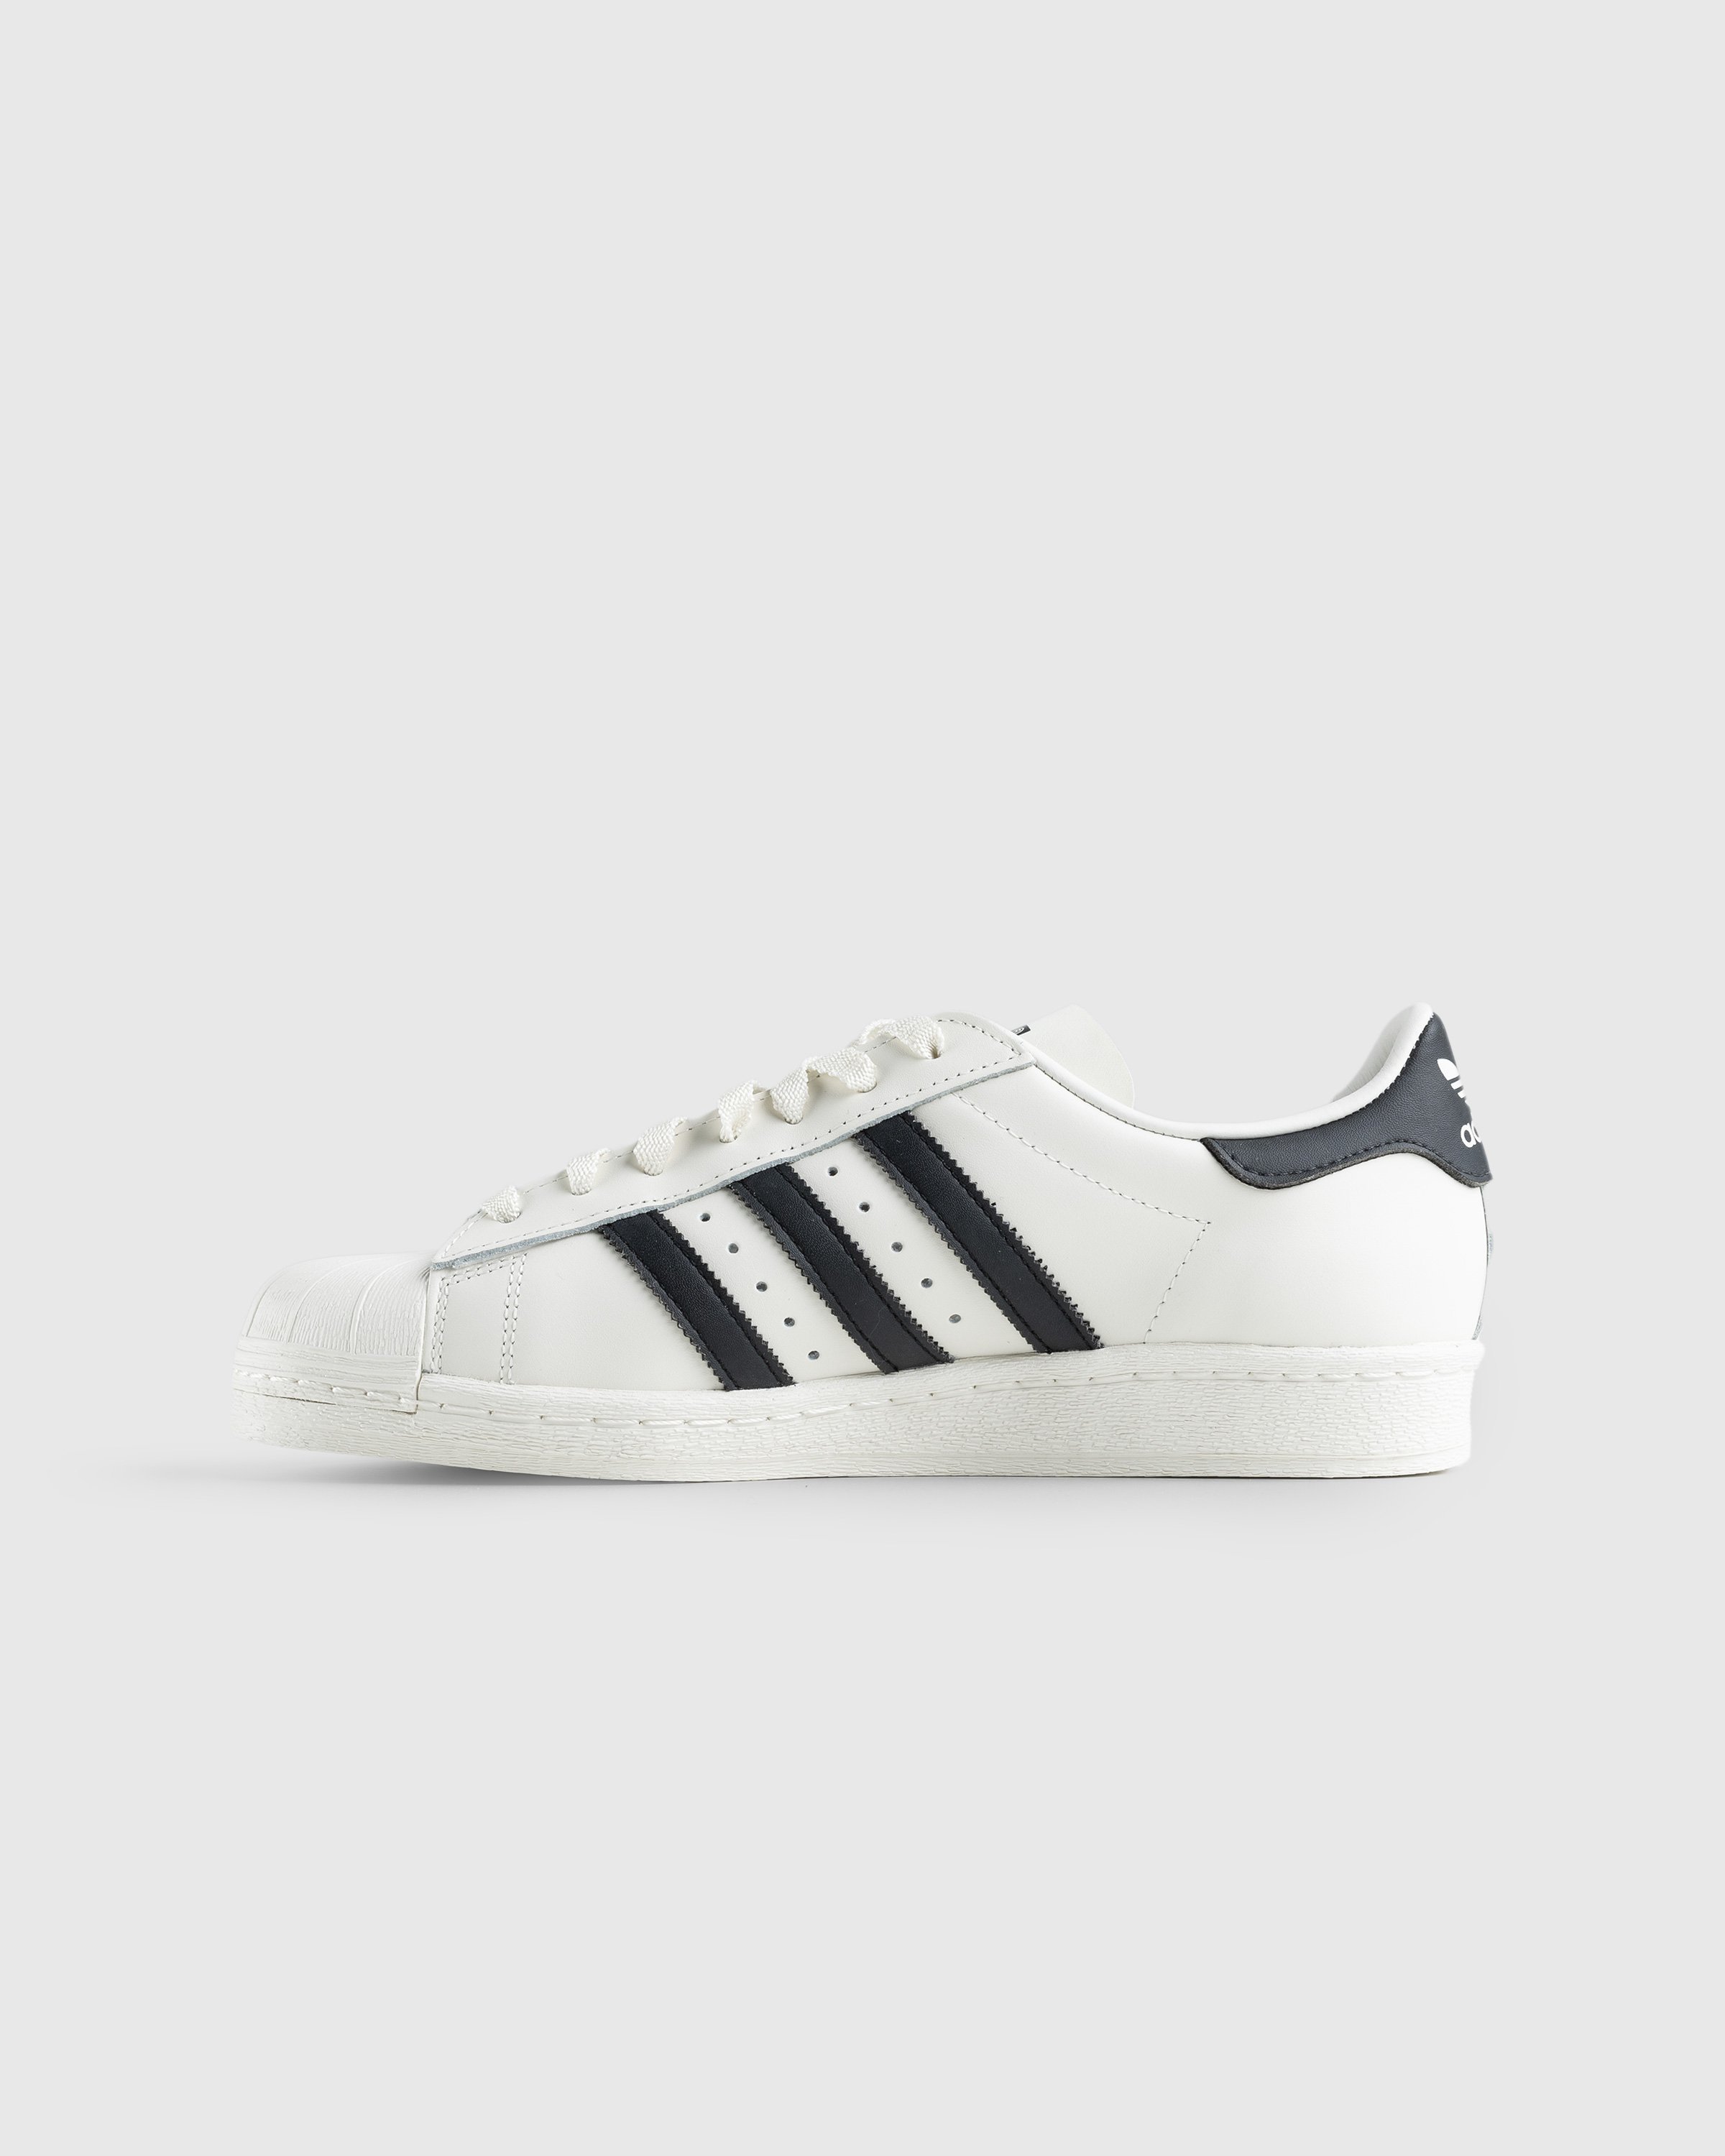 Adidas - Superstar 82 White/Black - Footwear - White - Image 2